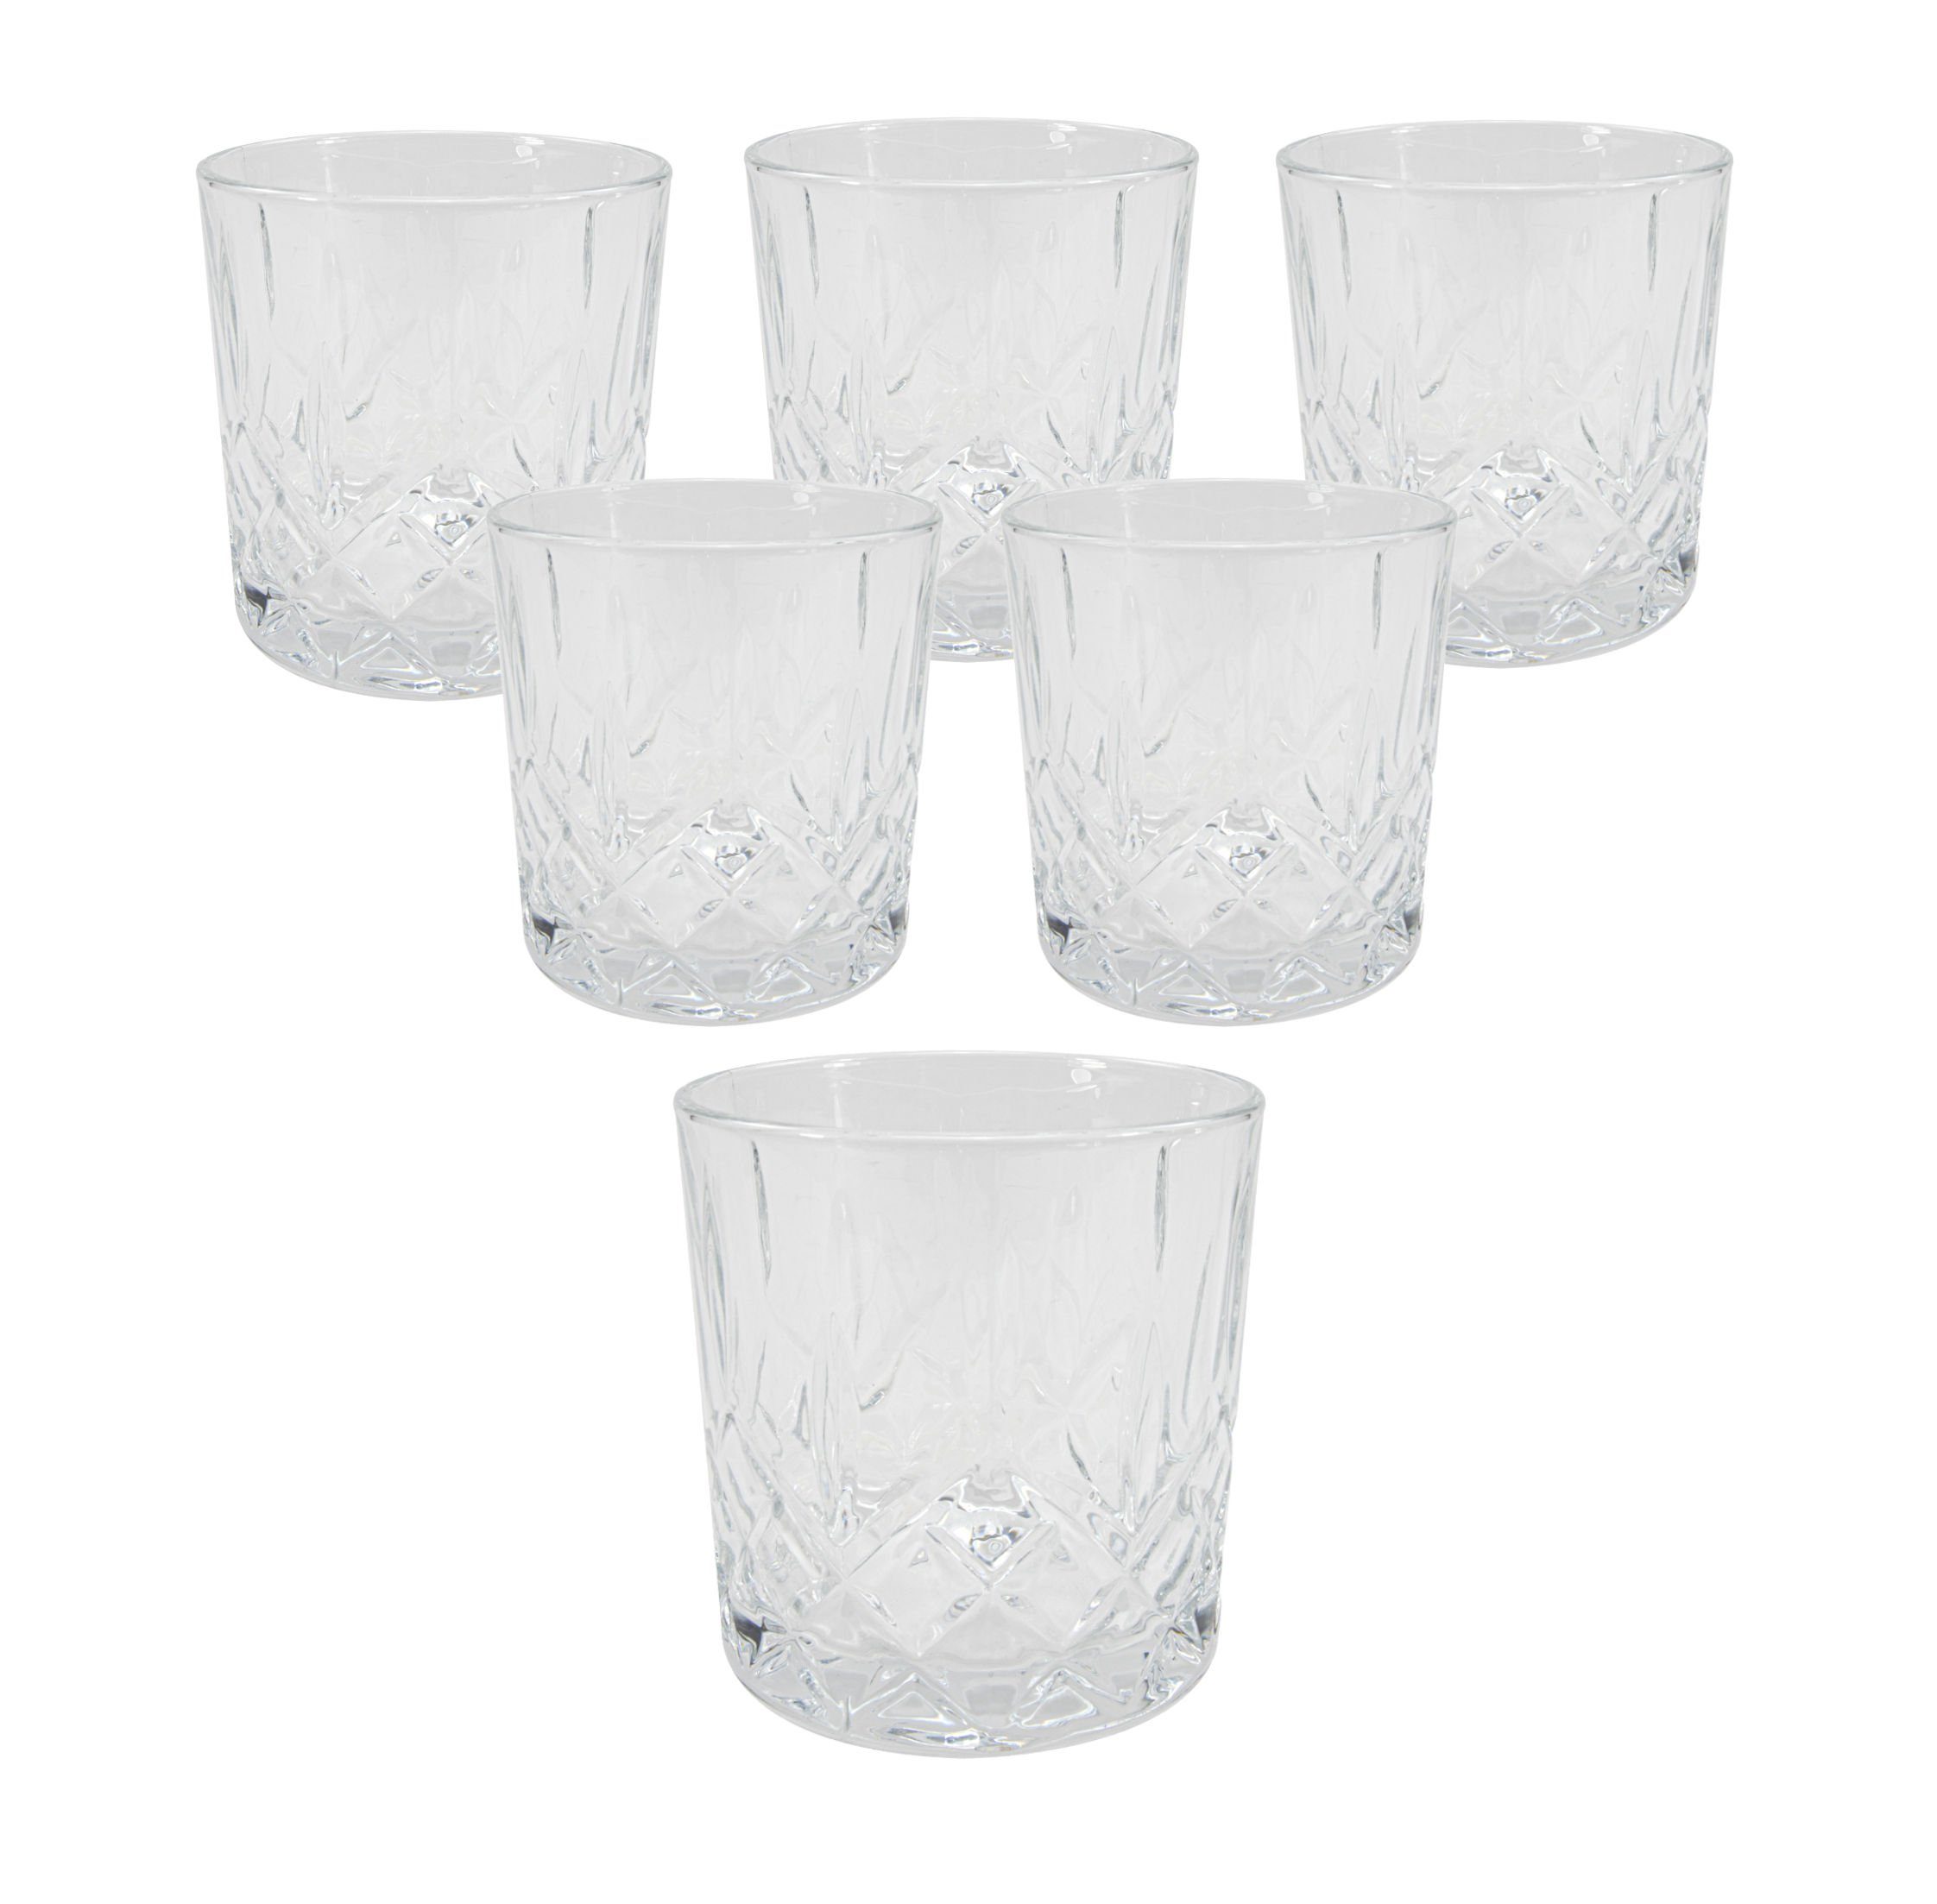 Spetebo Gläser-Set Wasser Gläser 355ml - 6er Set, Glas, Trinkgläser mit  Rauten Muster